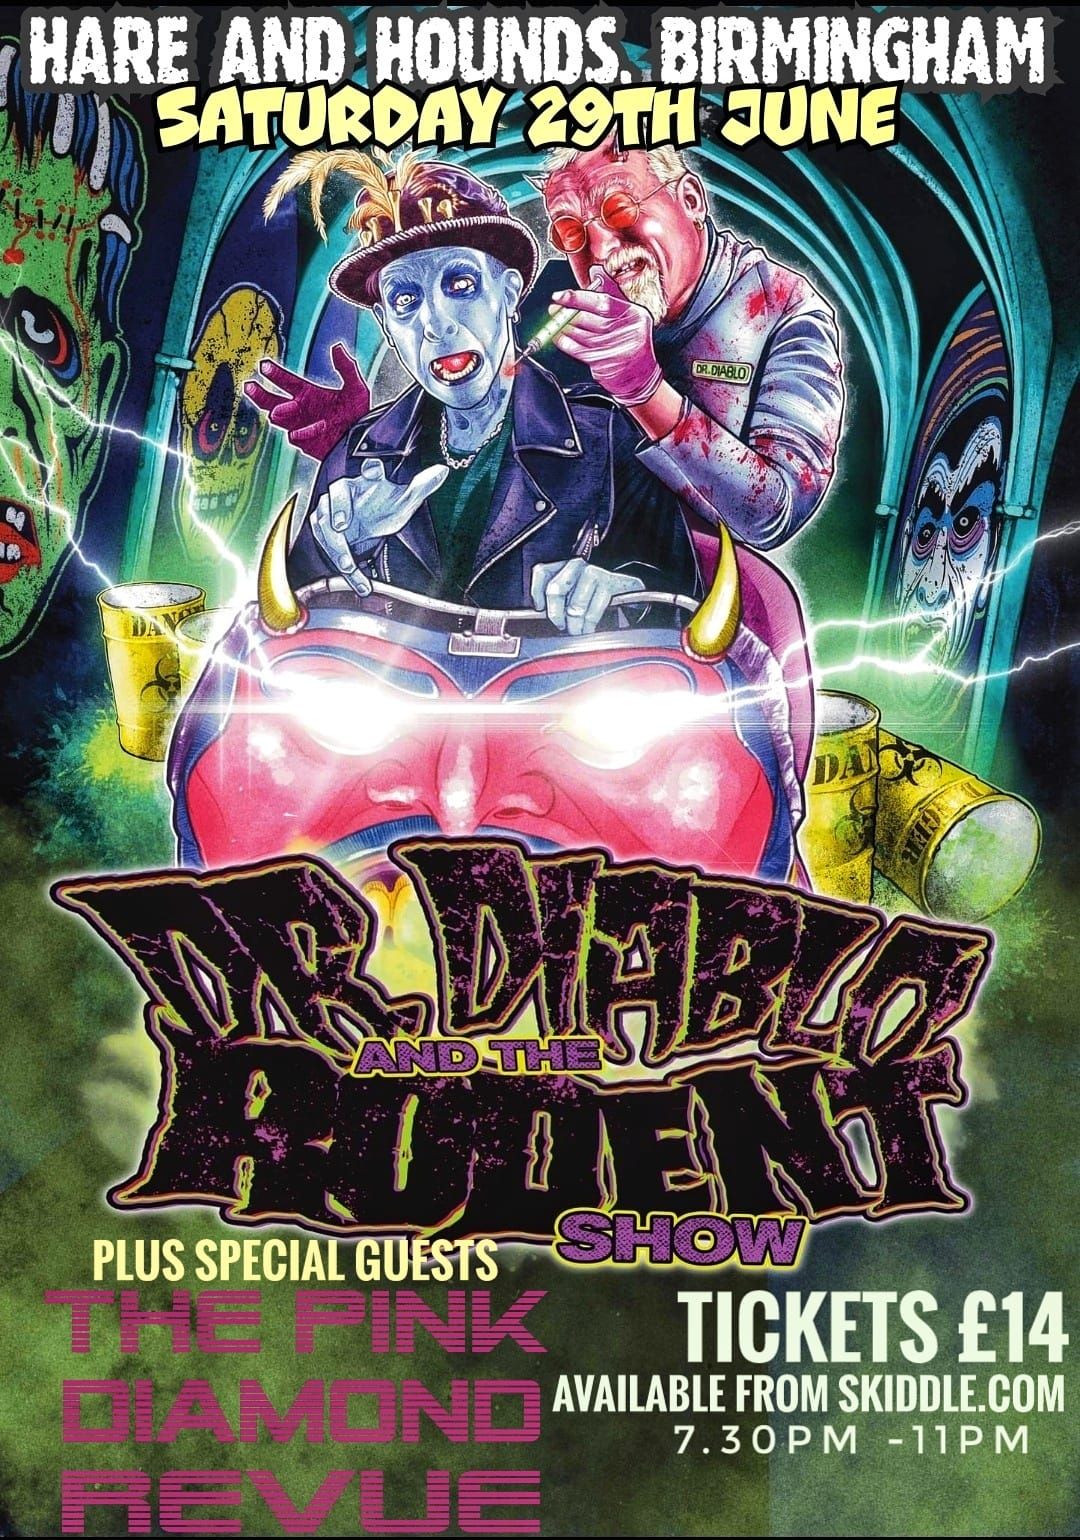 Dr Diablo & The Rodent Show